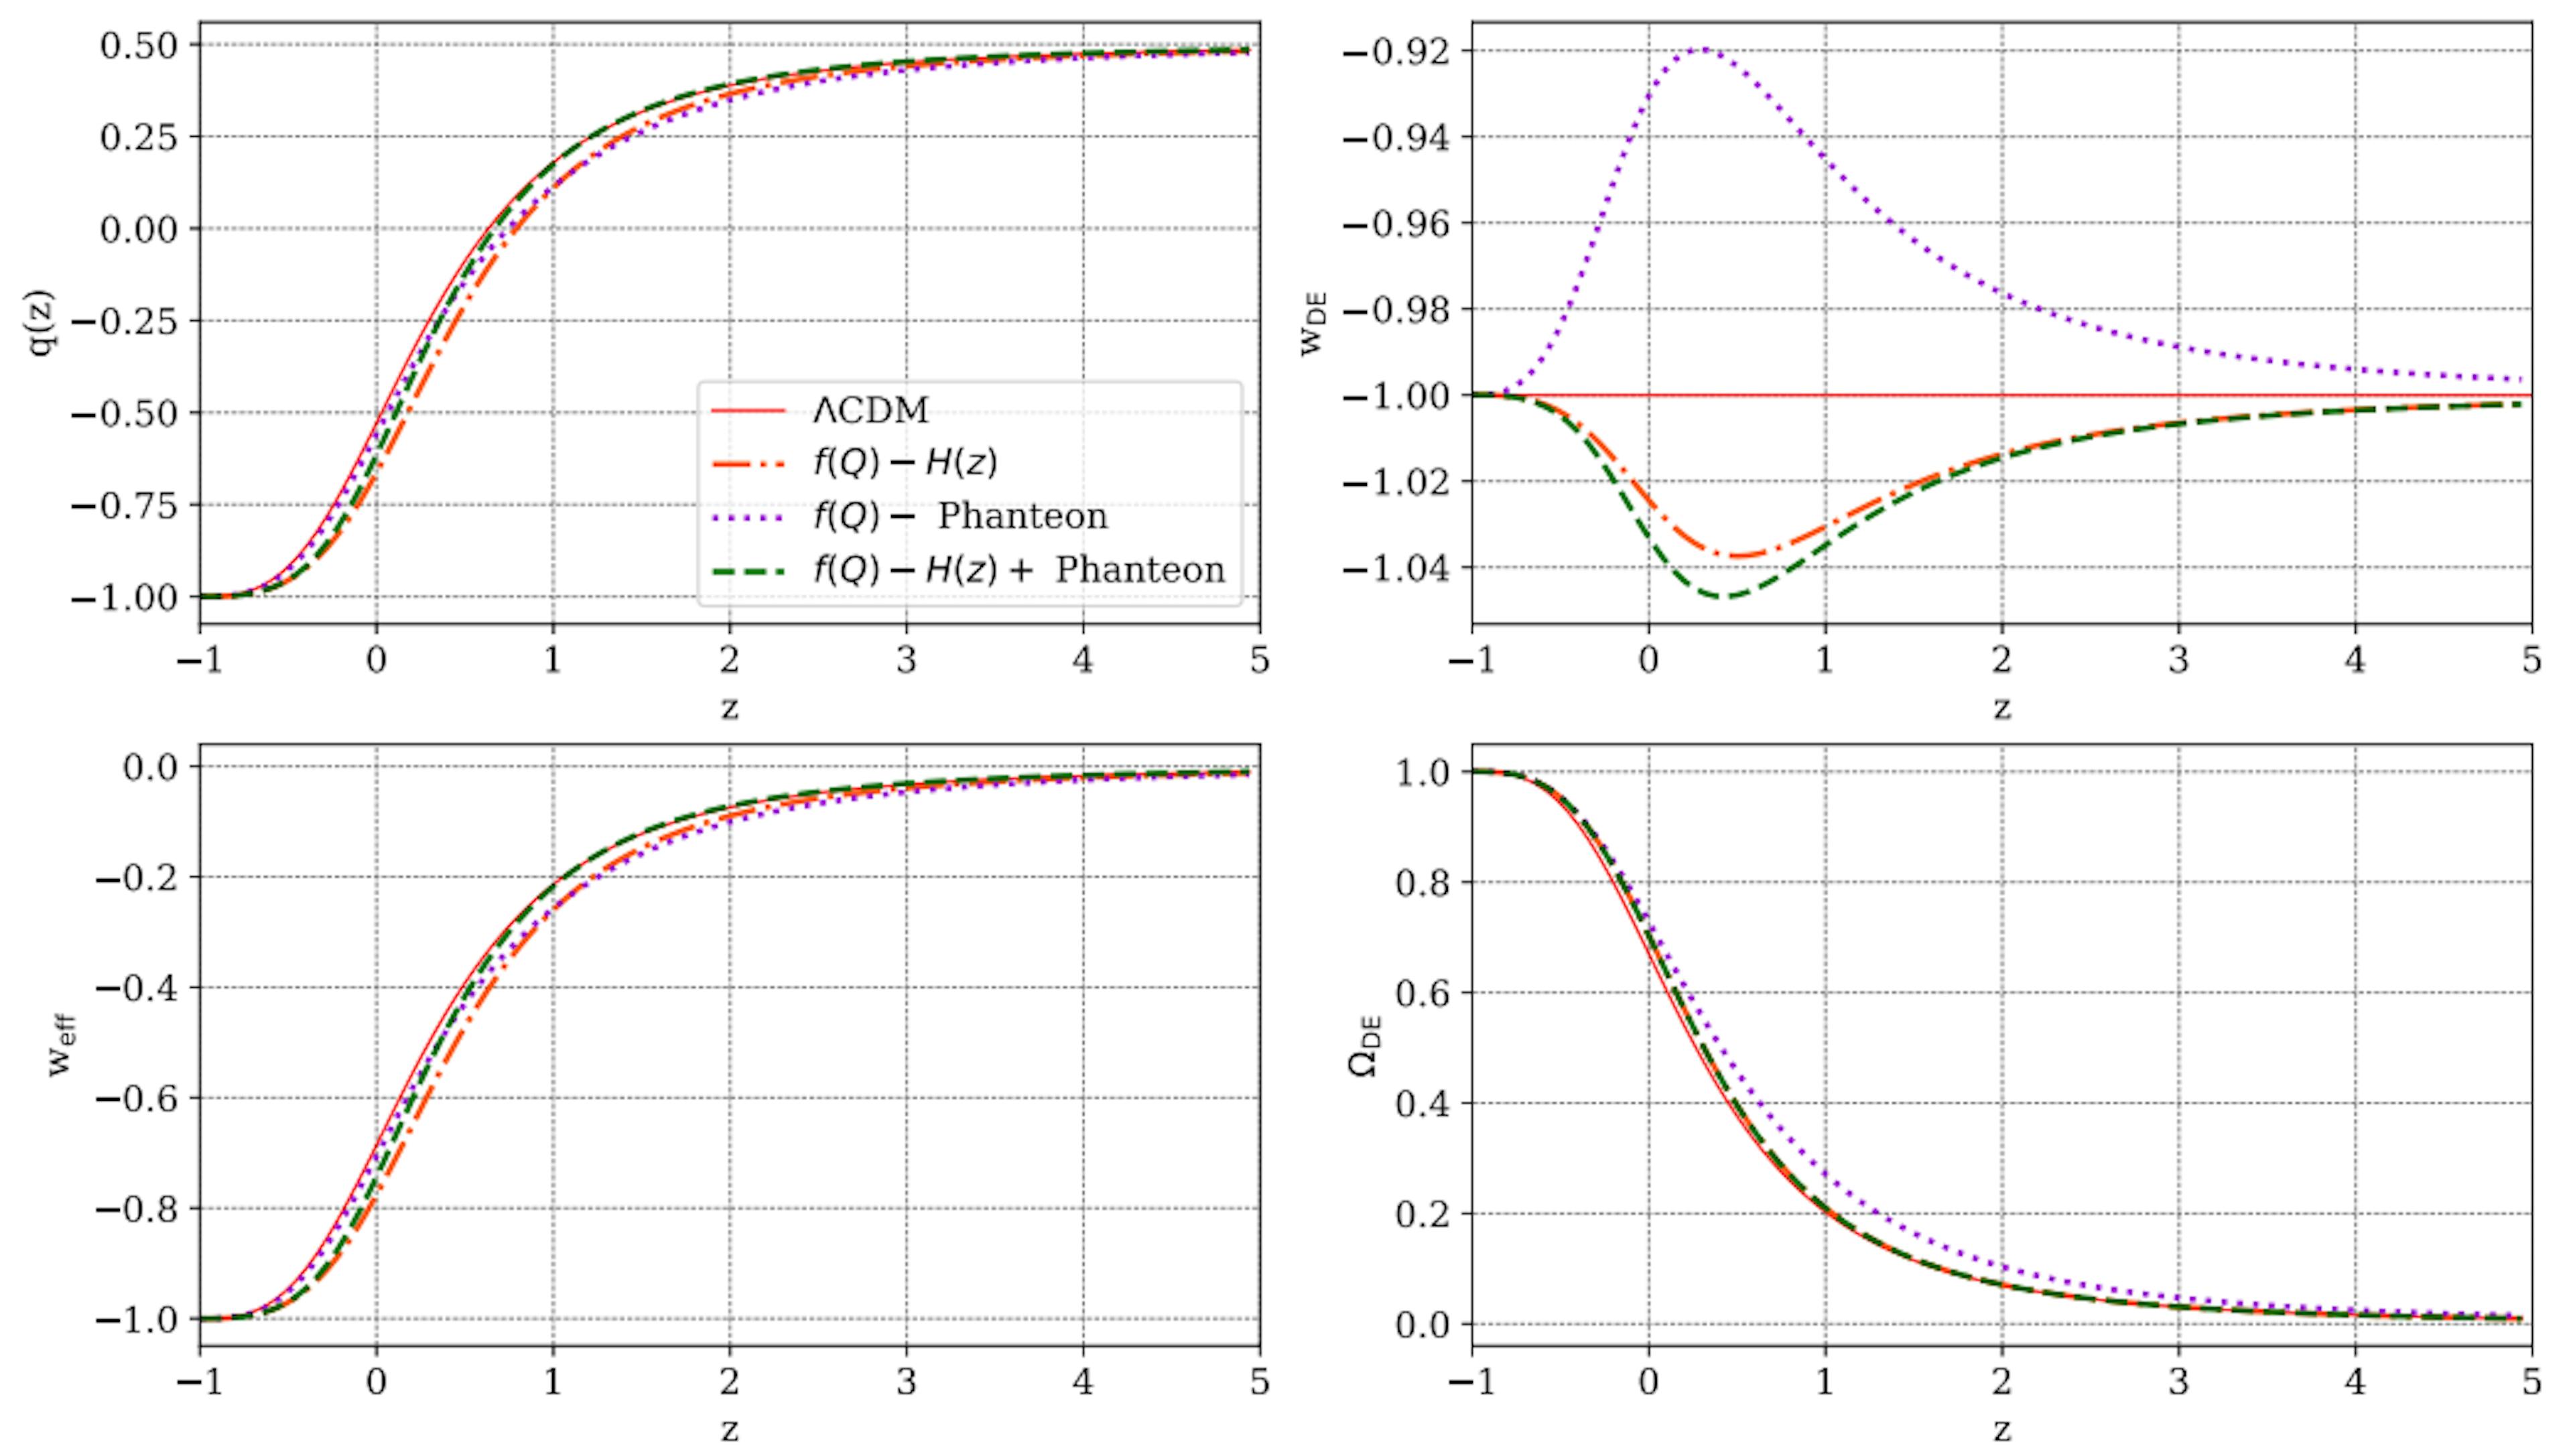 图 7：本文提出的 f(Q) 模型预测的一些宇宙学参数随红移 z 的变化，与 ΛCDM 预测（红色实线）进行比较。在每个面板中，橙色点划线、紫色点划线和绿色虚线分别是 H(z)、Pantheon 和 H(z)+ Pantheon 样本的参数约束结果。